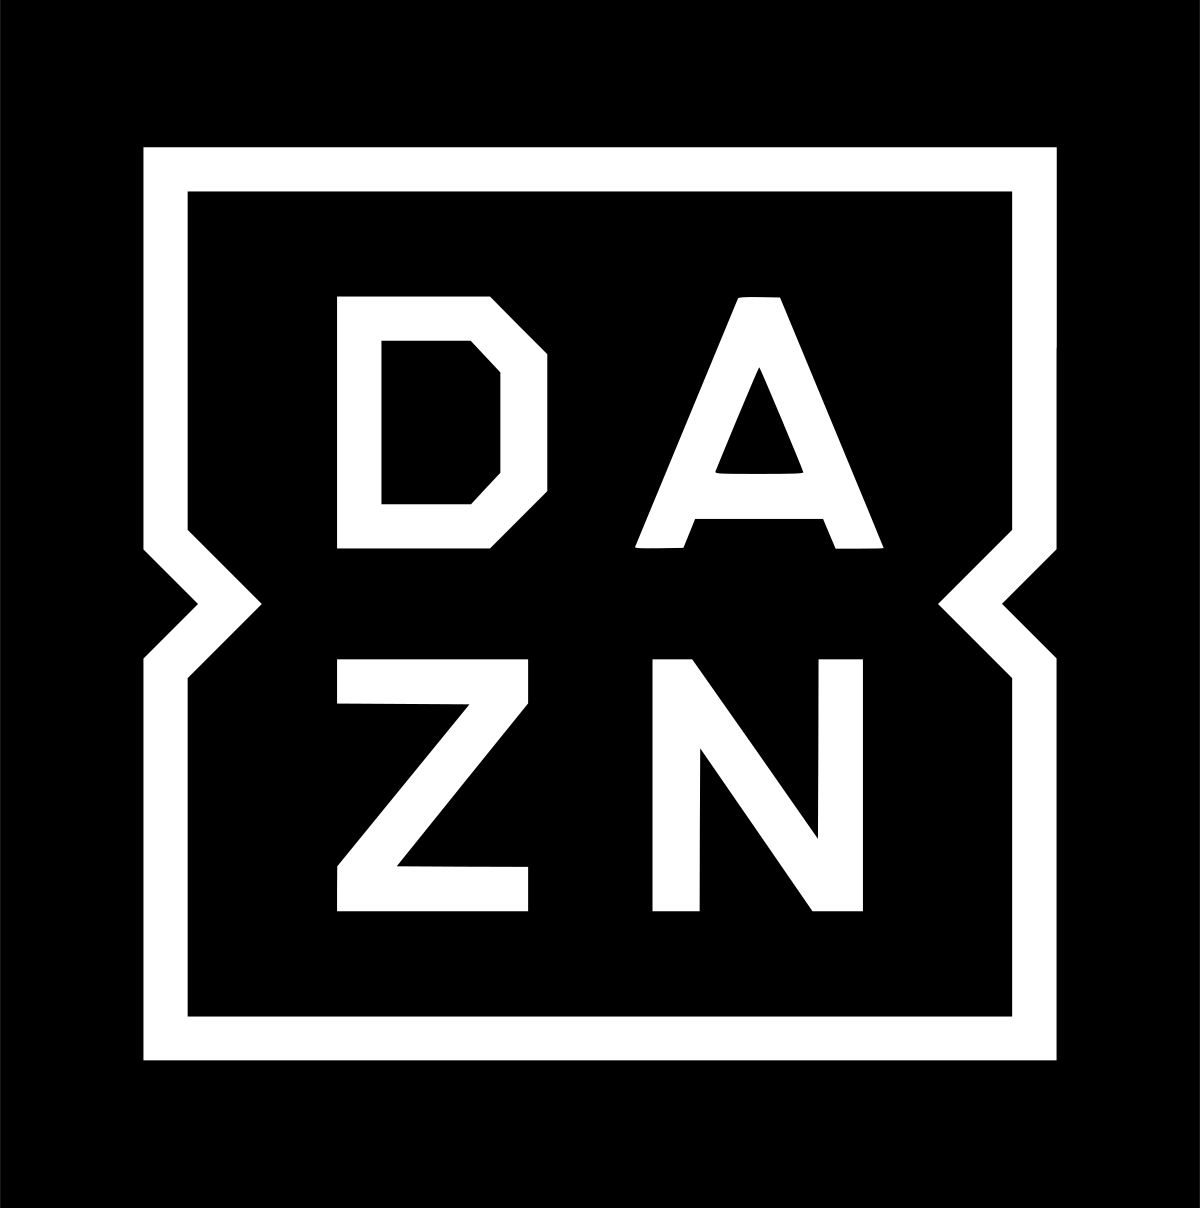 DAZN_logo.svg